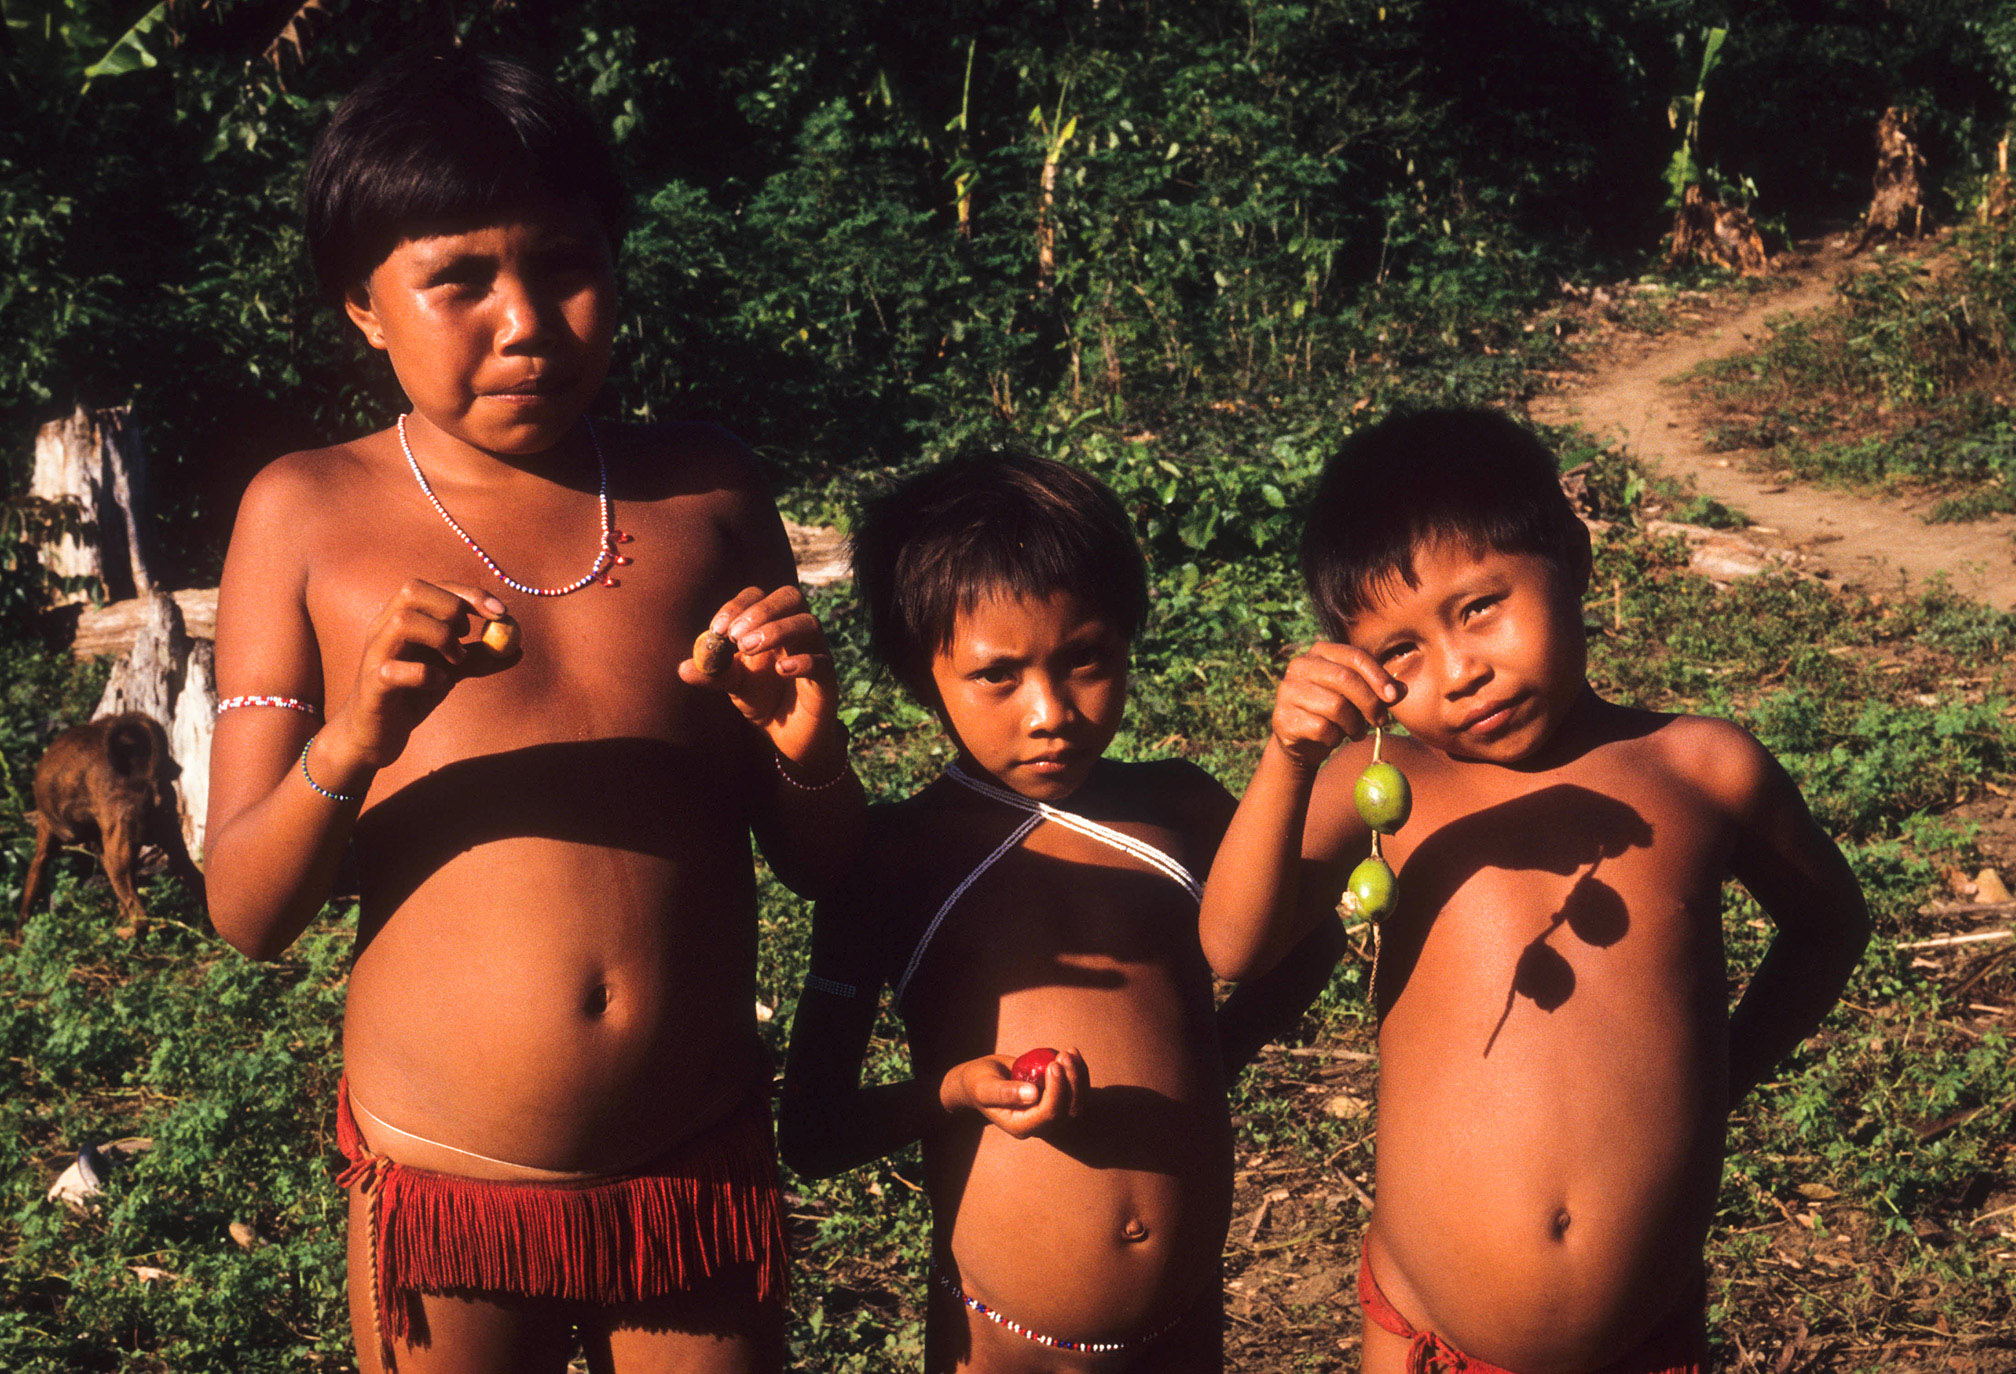 Coronavírus: O que podemos aprender com um xamã da Amazônia? Parte 4: Os seres que protegem o mundo